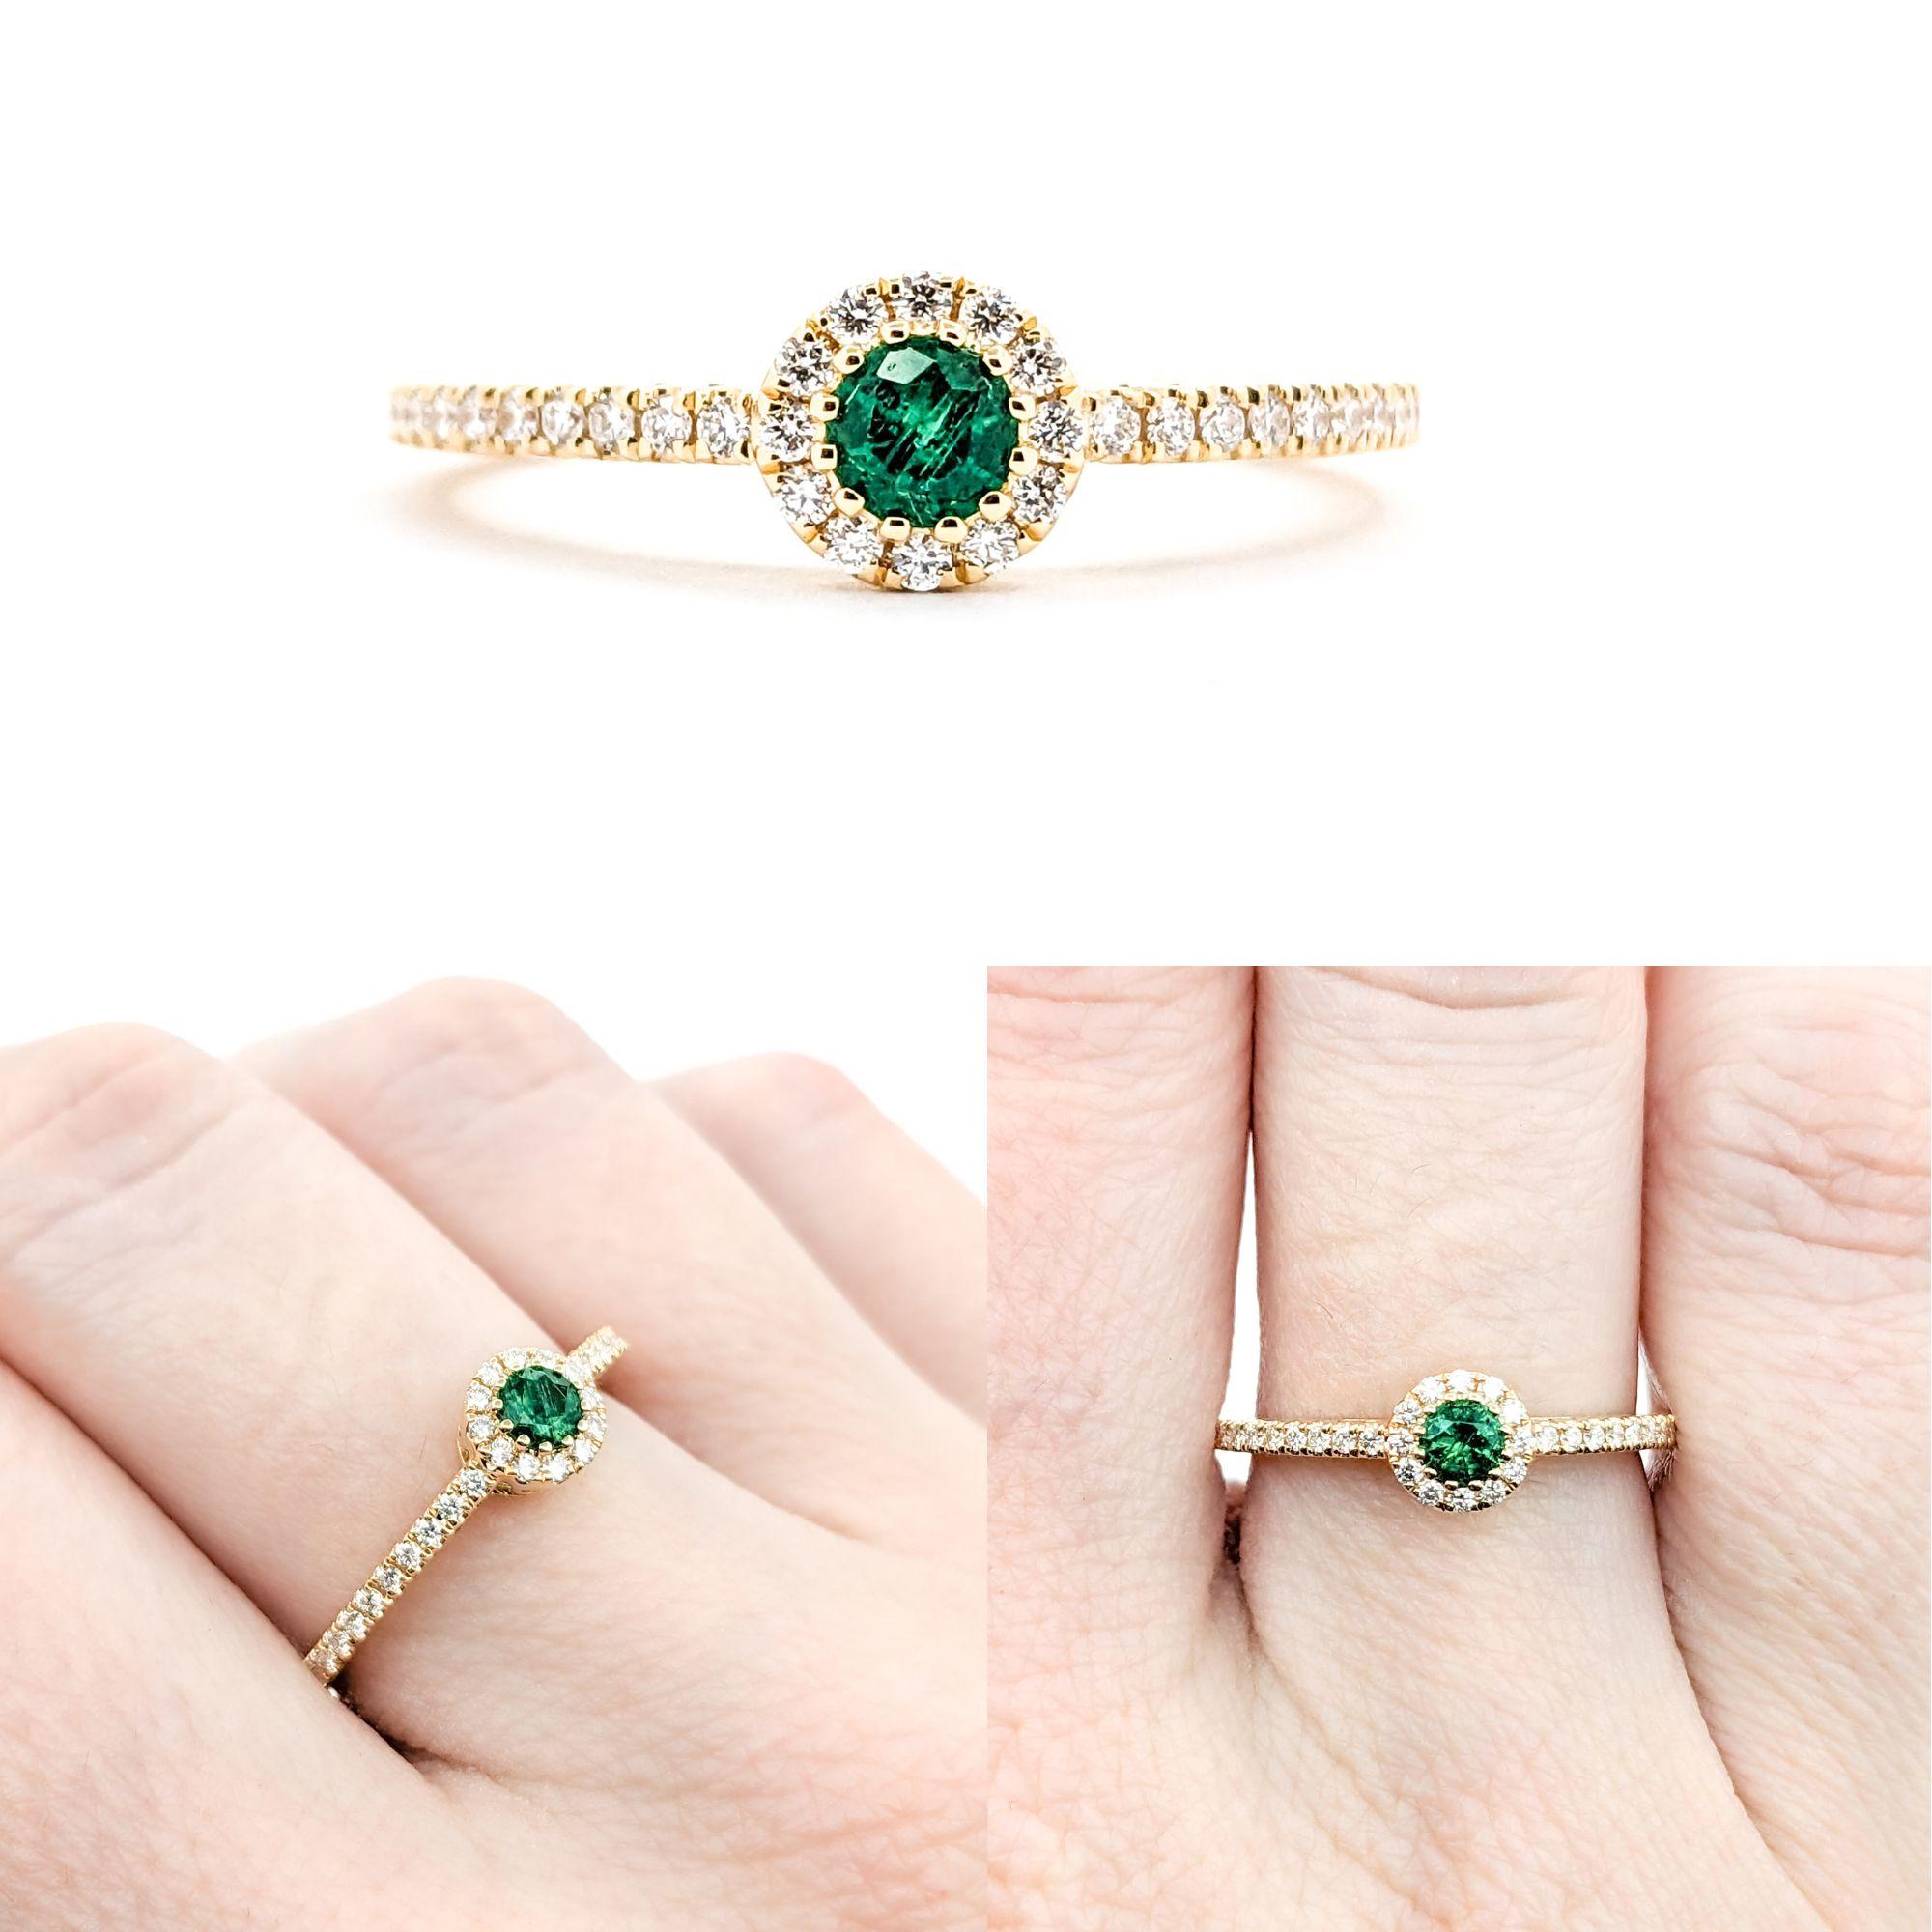 0,13 Karat grüner Smaragd und Diamant-Halo aus 18 Karat Gelbgold

Dieser exquisite Ring hat einen grünen Smaragd von 0,13 Karat in der Mitte, umgeben von runden Diamanten von 0,22 Karat. Die Diamanten sind von der Reinheit SI-I und haben einen